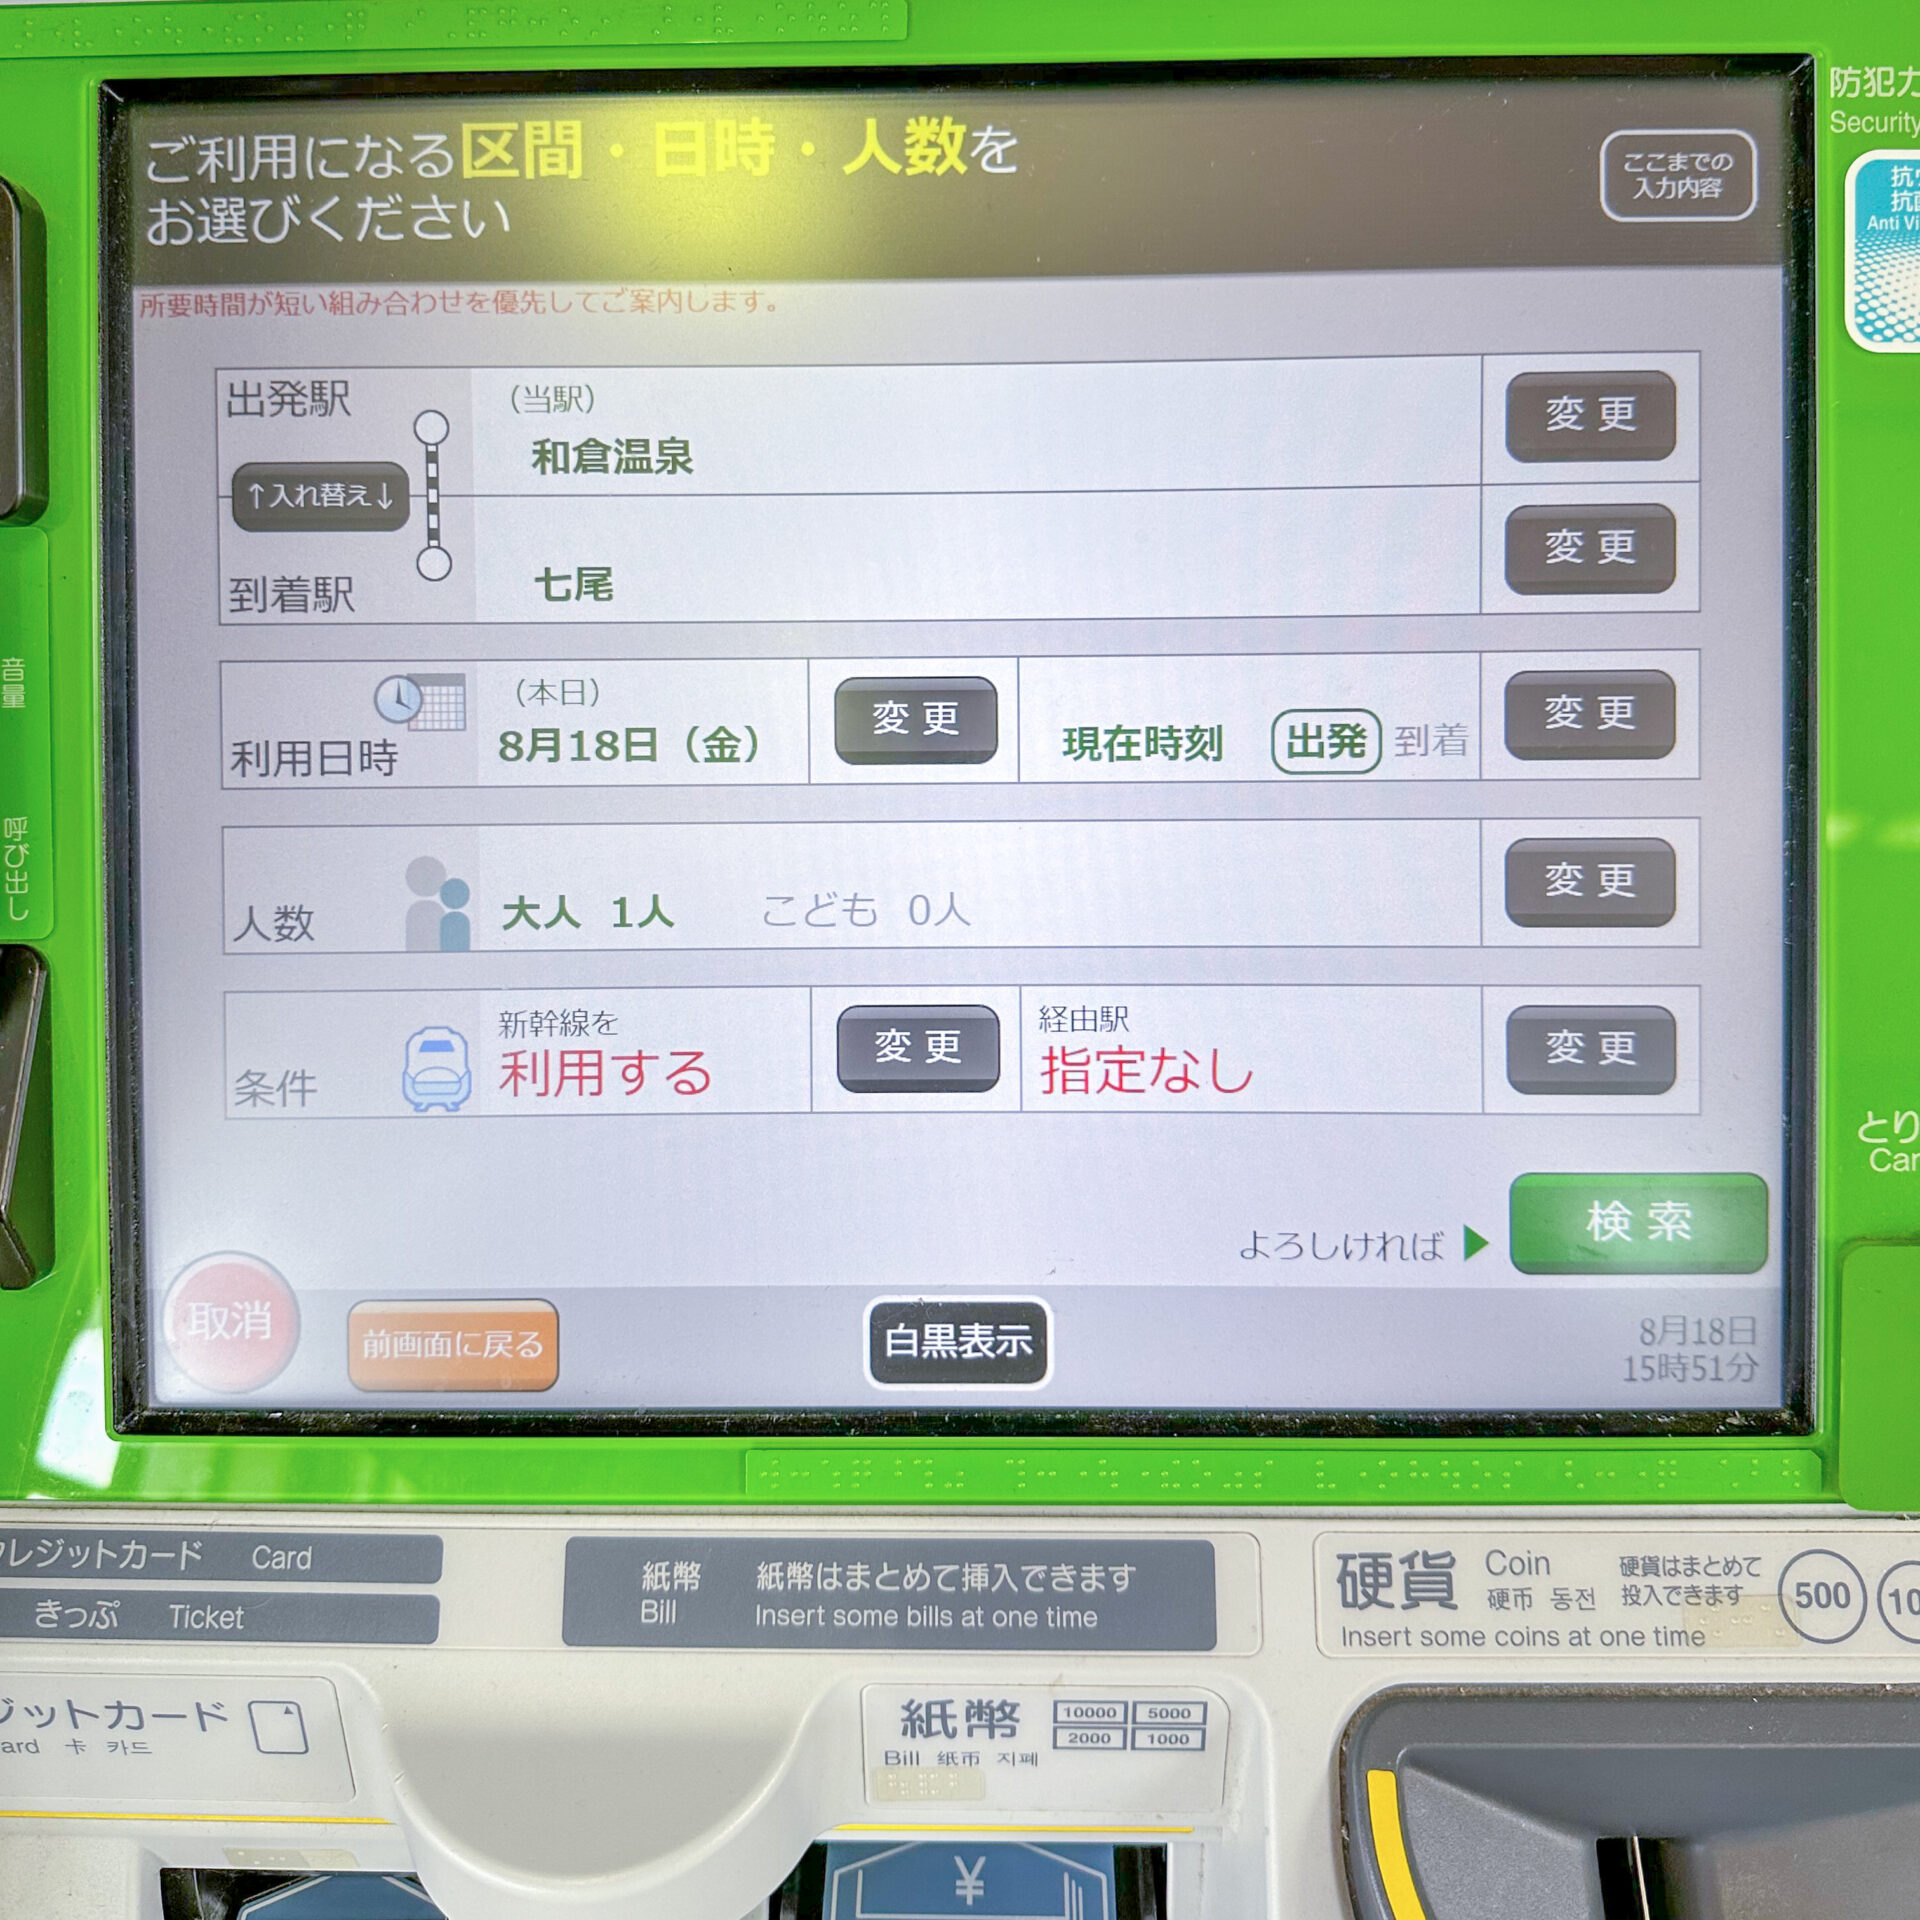 JR西日本みどりの券売機プラス操作画面